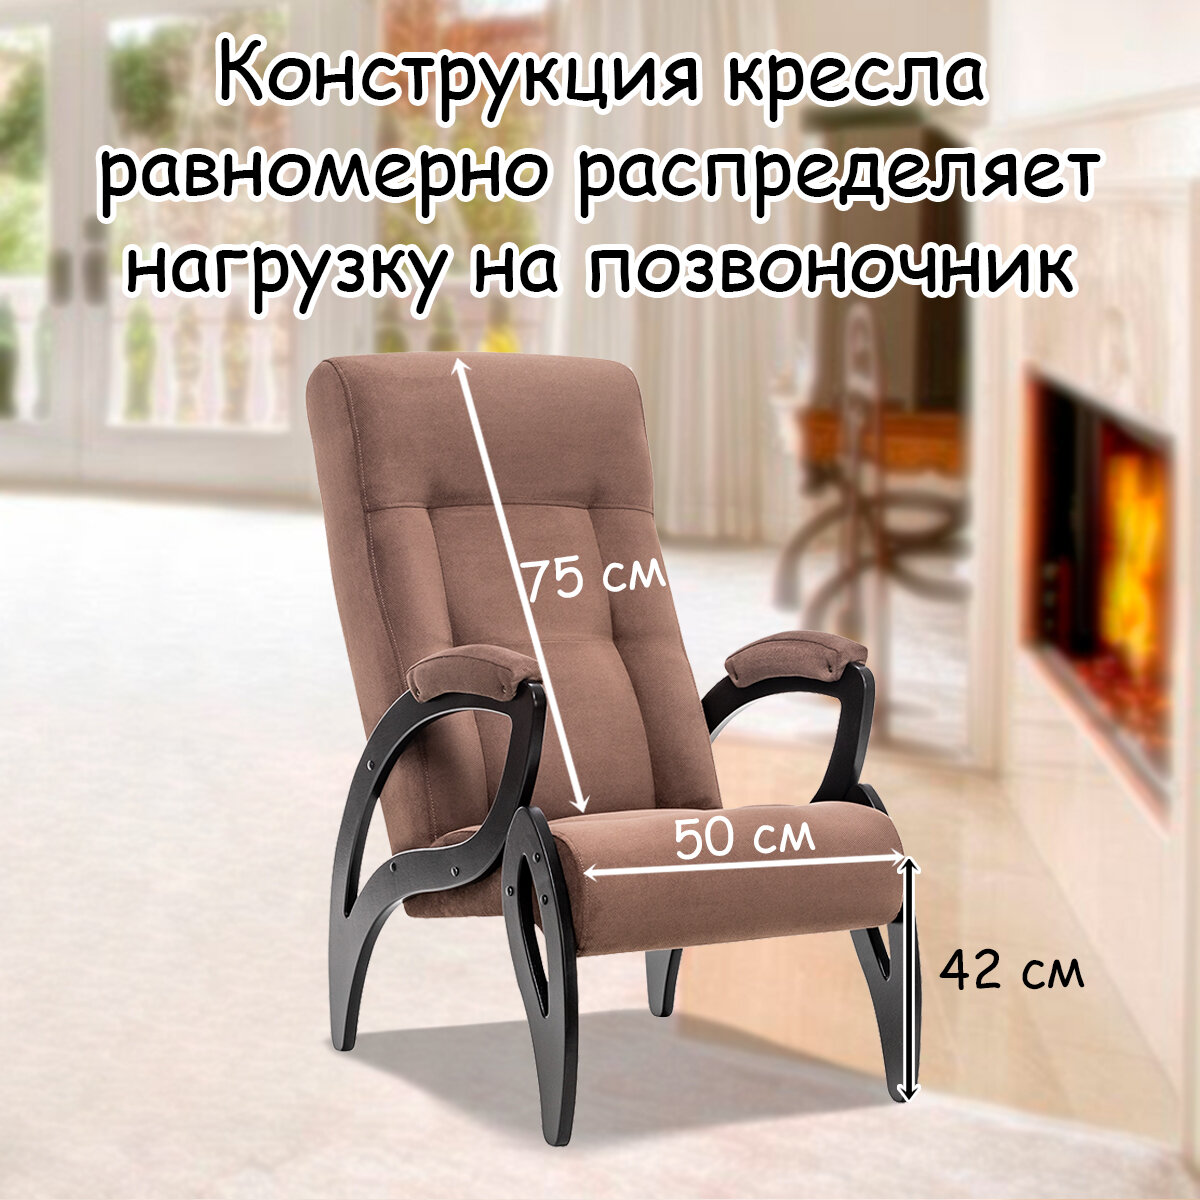 Кресло для взрослых 58.5х87х99 см, модель 51, verona, цвет: Brown (коричневый), каркас: Venge (черный) - фотография № 2